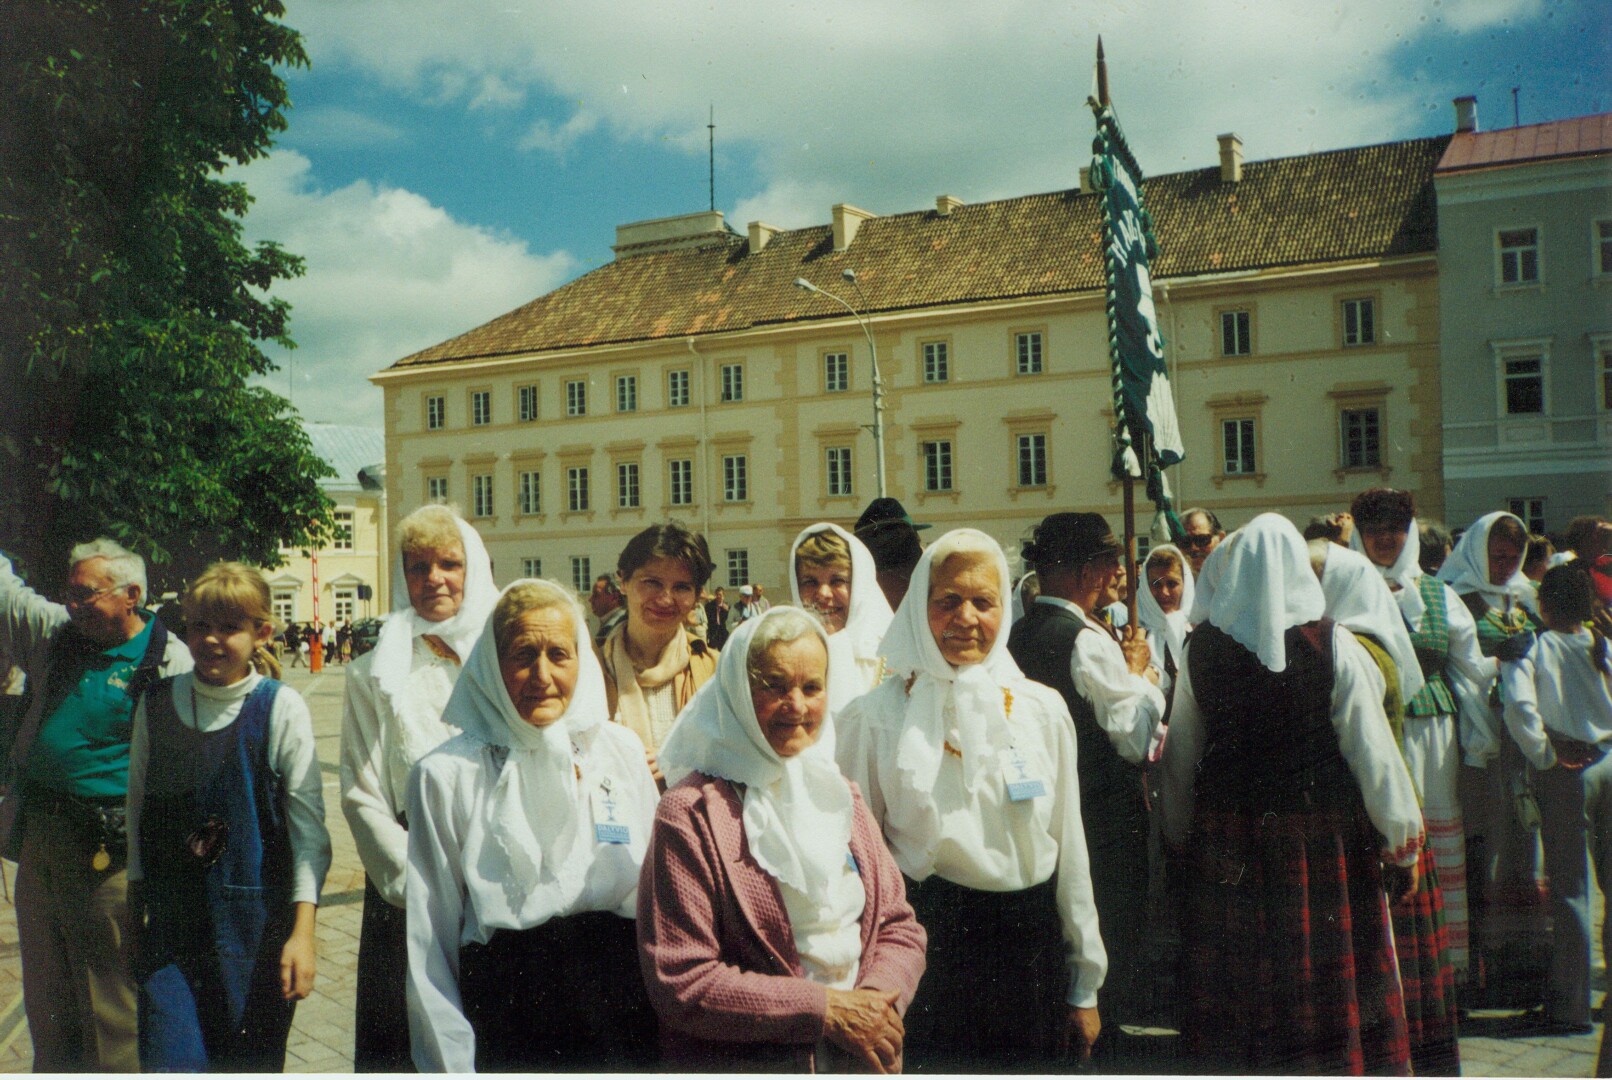 Pasaulio lietuvių dainų šventėje Vilniuje, 1998-ieji. Fotografavo S. Skrebė. PANEVĖŽIO KRAŠTOTYROS MUZIEJAUS SKAITMENINIO ARCHYVO nuotr.